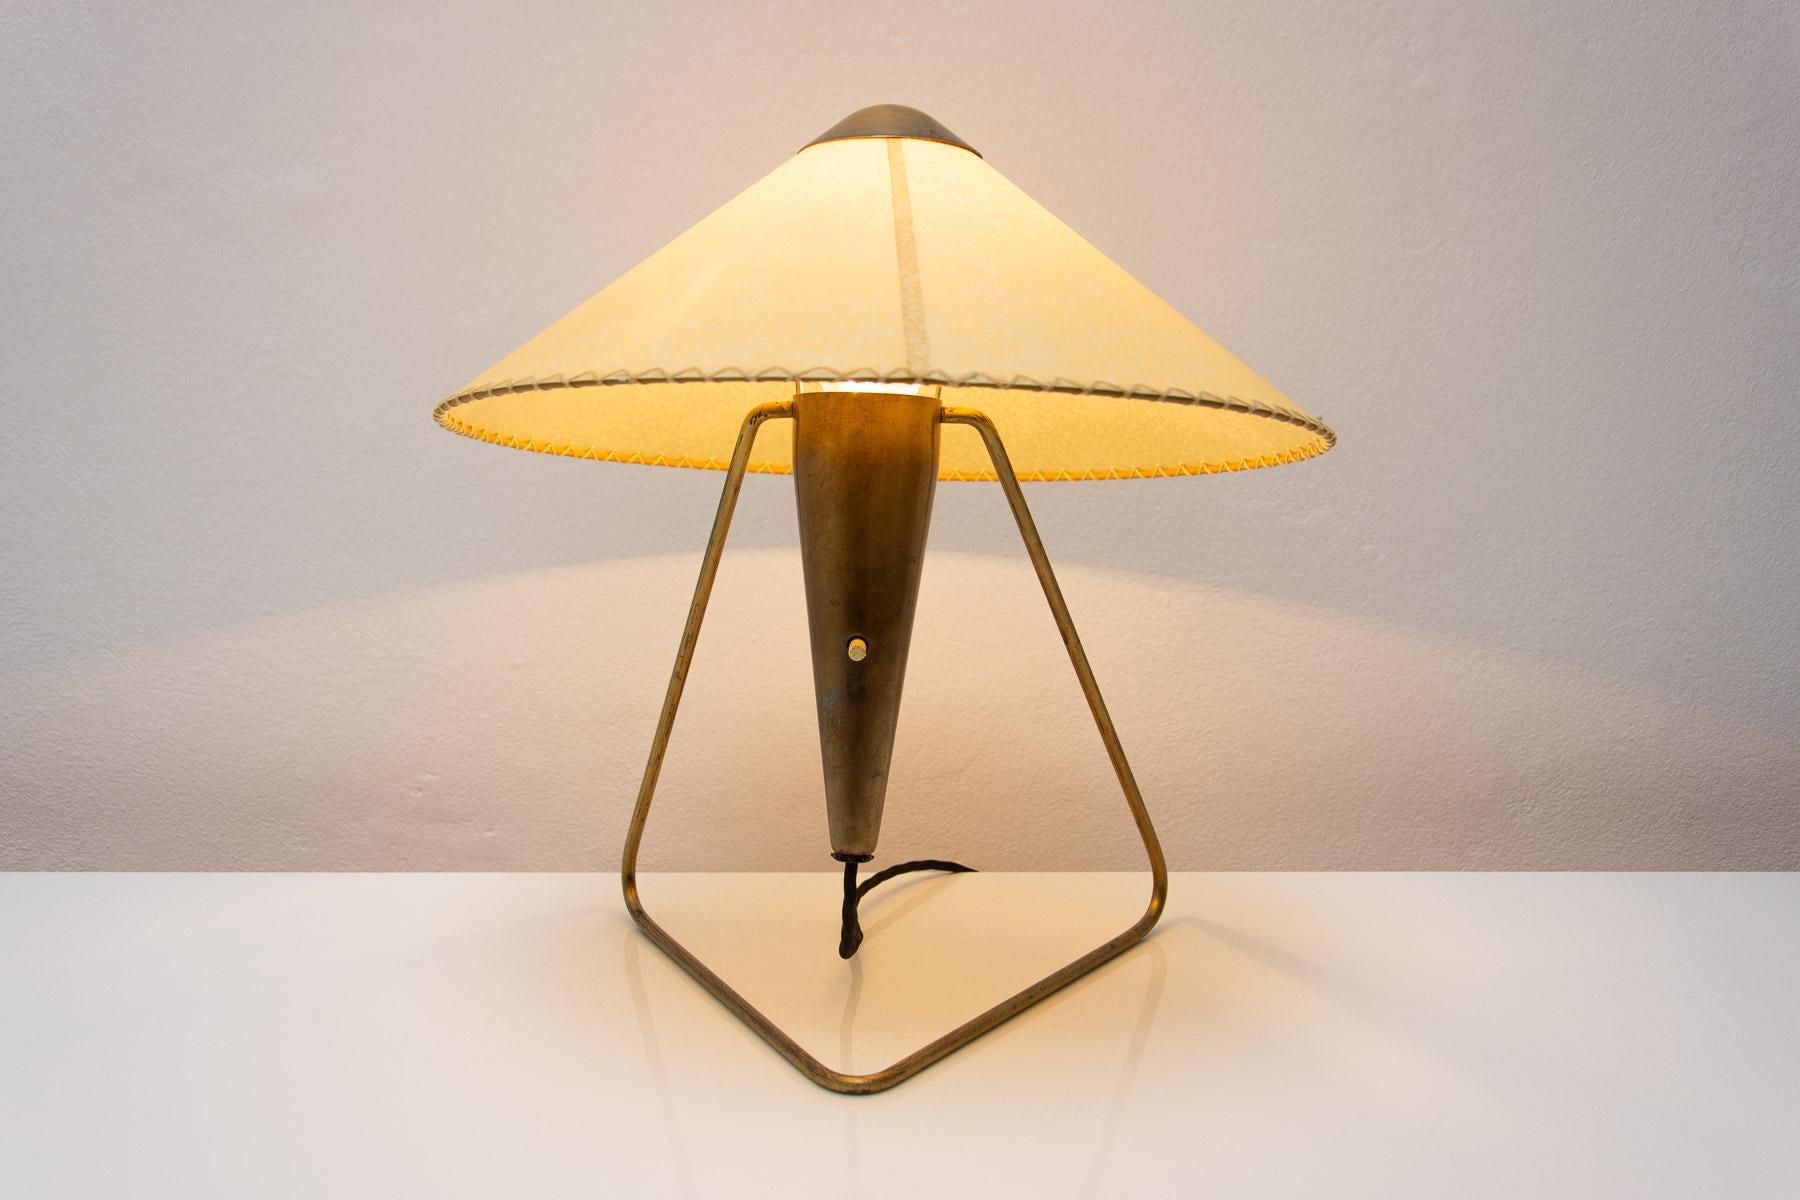  Czech mid century modern tripod desk lamp by Helena Frantova for Okolo, Czech. 6